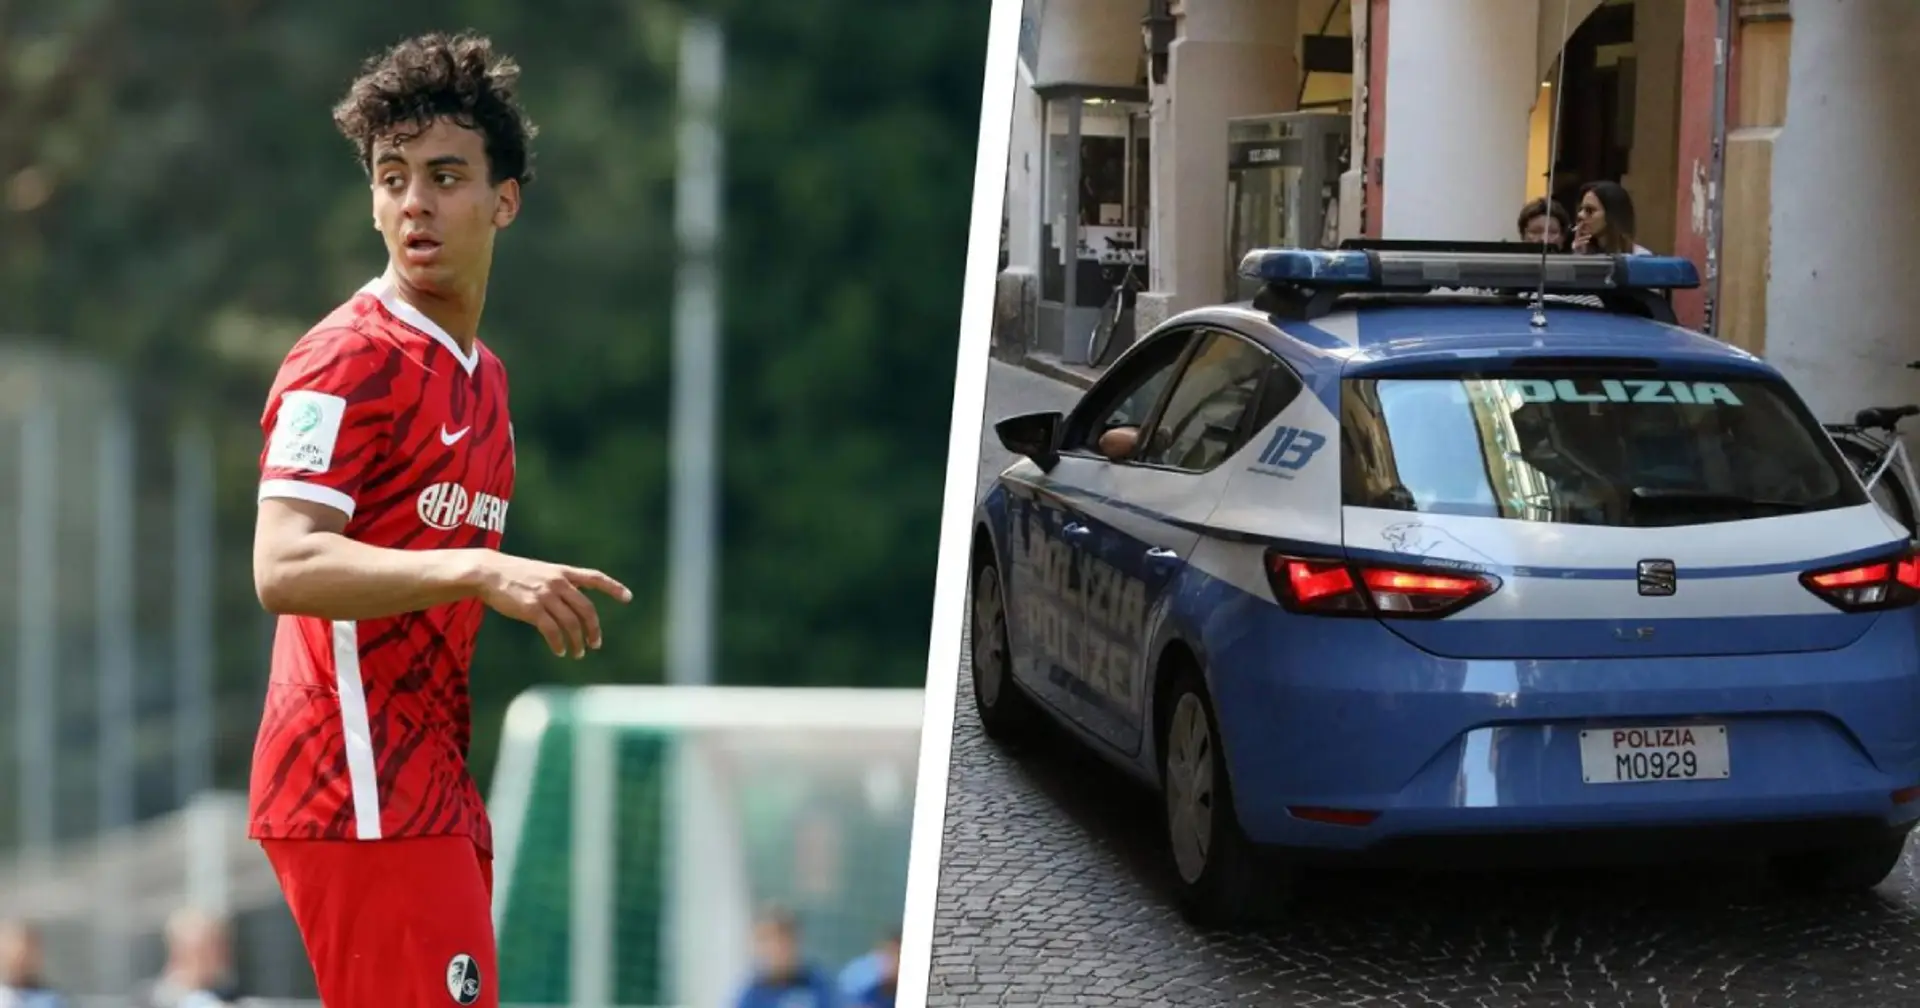 Südtirol-Spieler klaut Auto eines Mitspielers: Verfolgungsjagd mit der Polizei